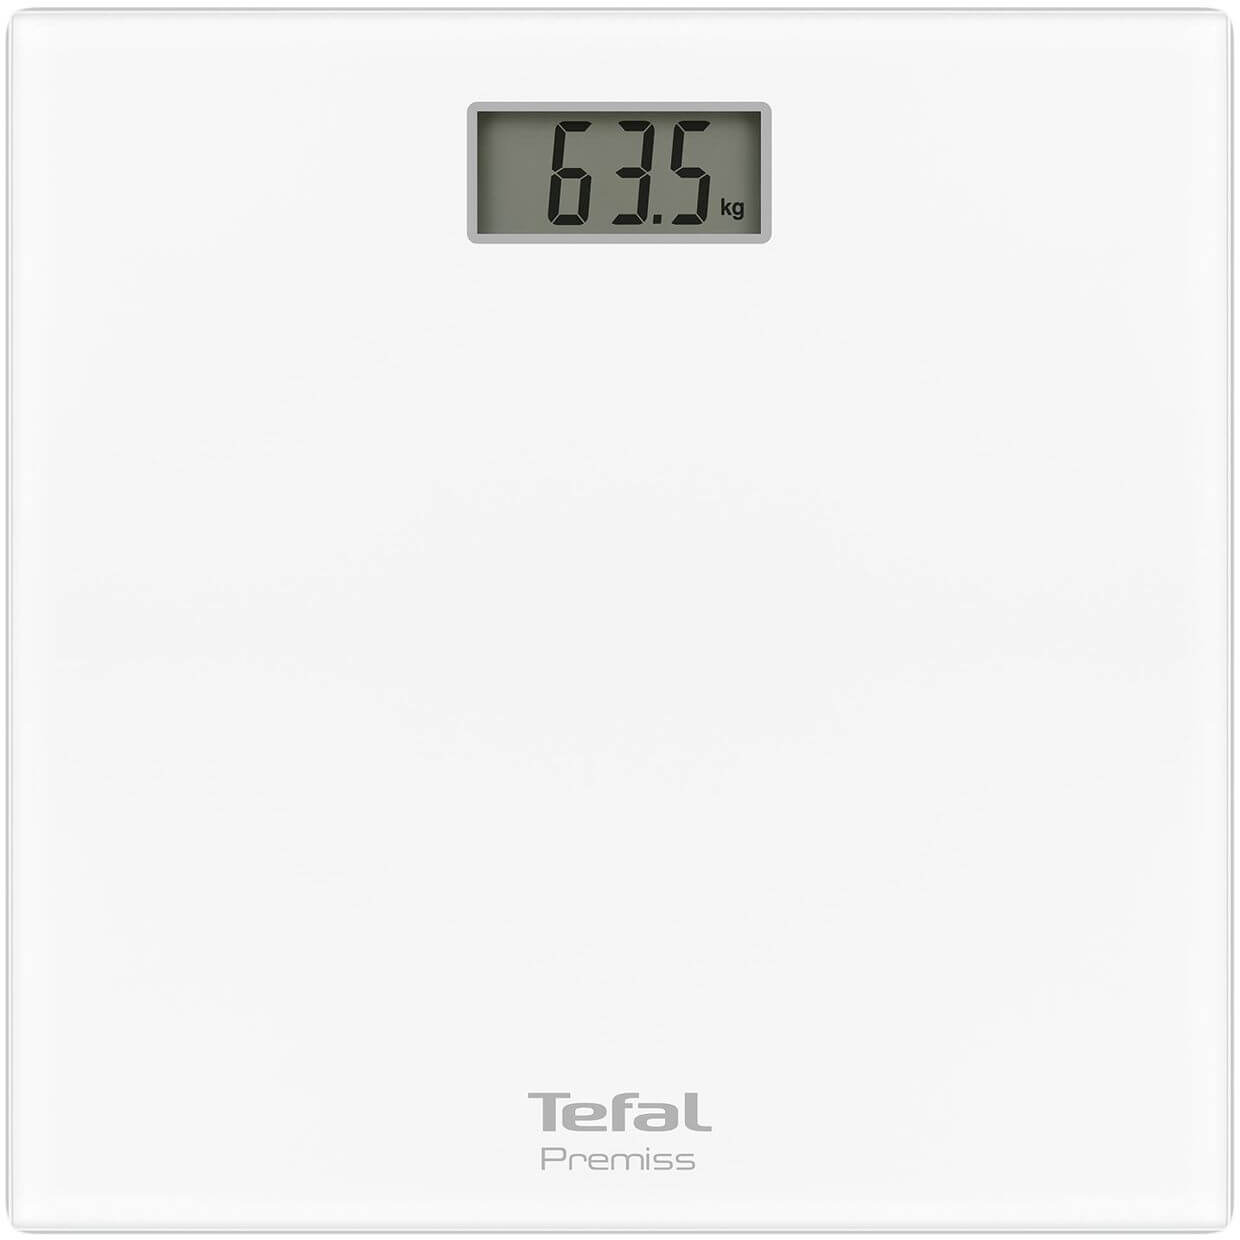  Cantar electronic Tefal Premiss PP1061V0, 150 kg, Alb 